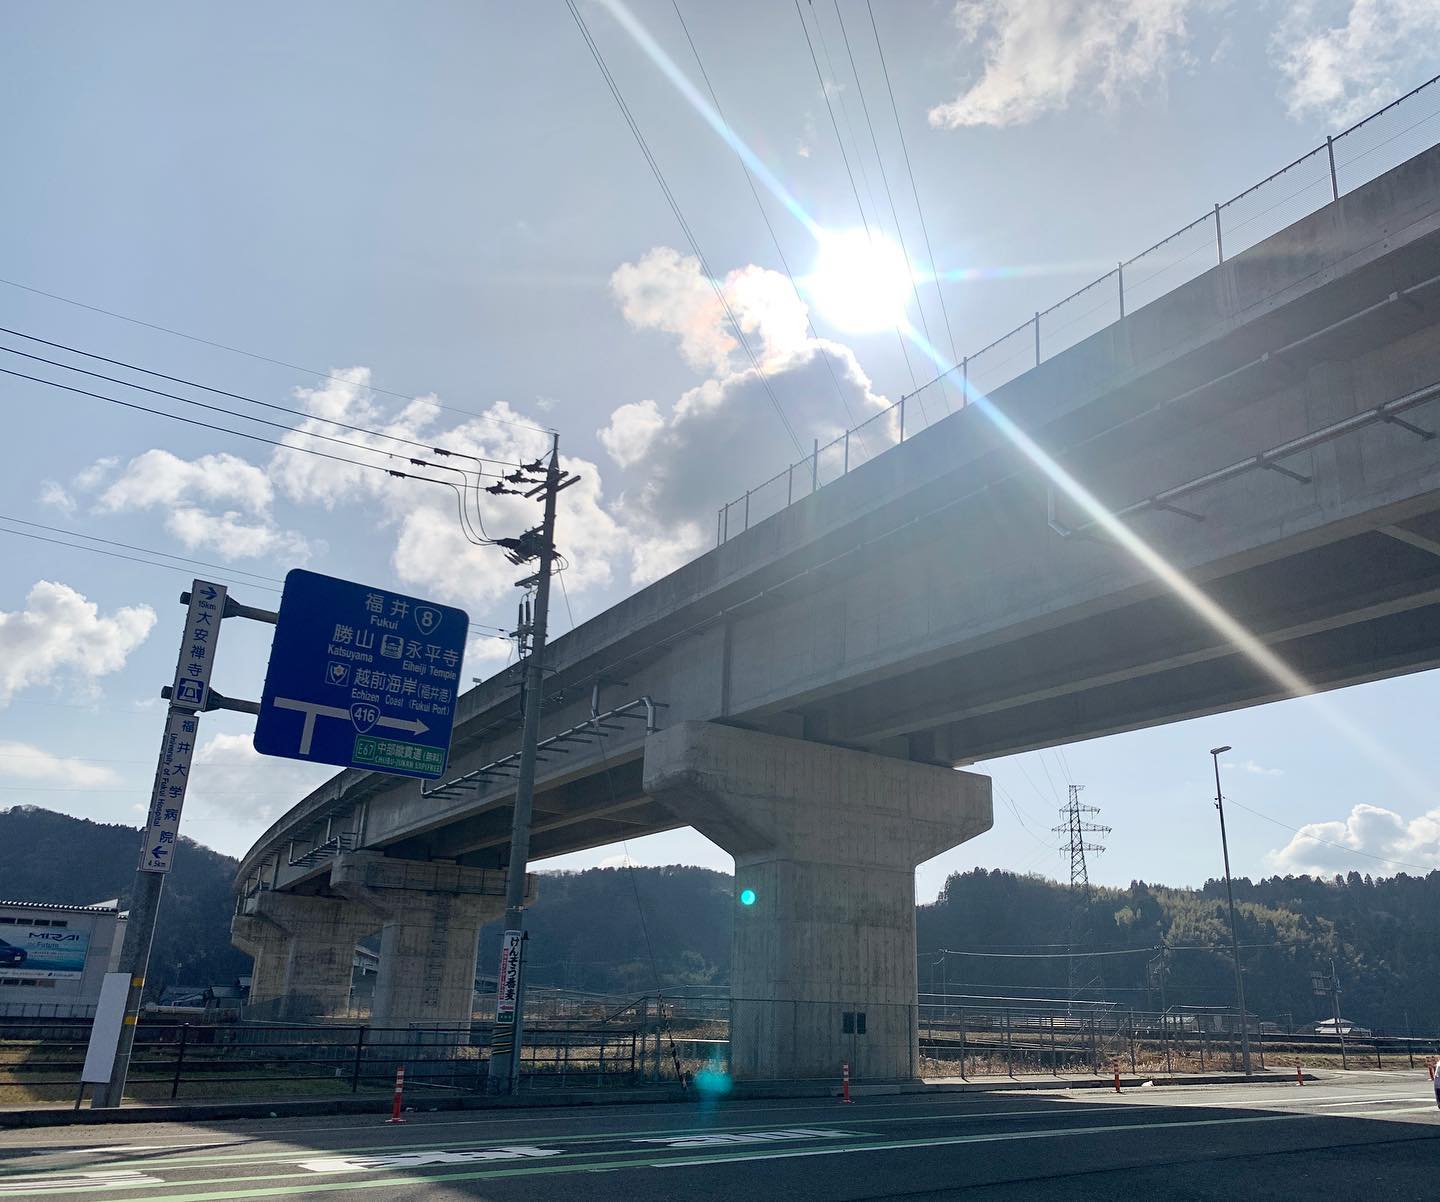 延期になってた撮影の日。晴れました！今日は福井市内2箇所で撮影。まずは福井北インター近くの現場なので、武生から高速で到着。がんばります